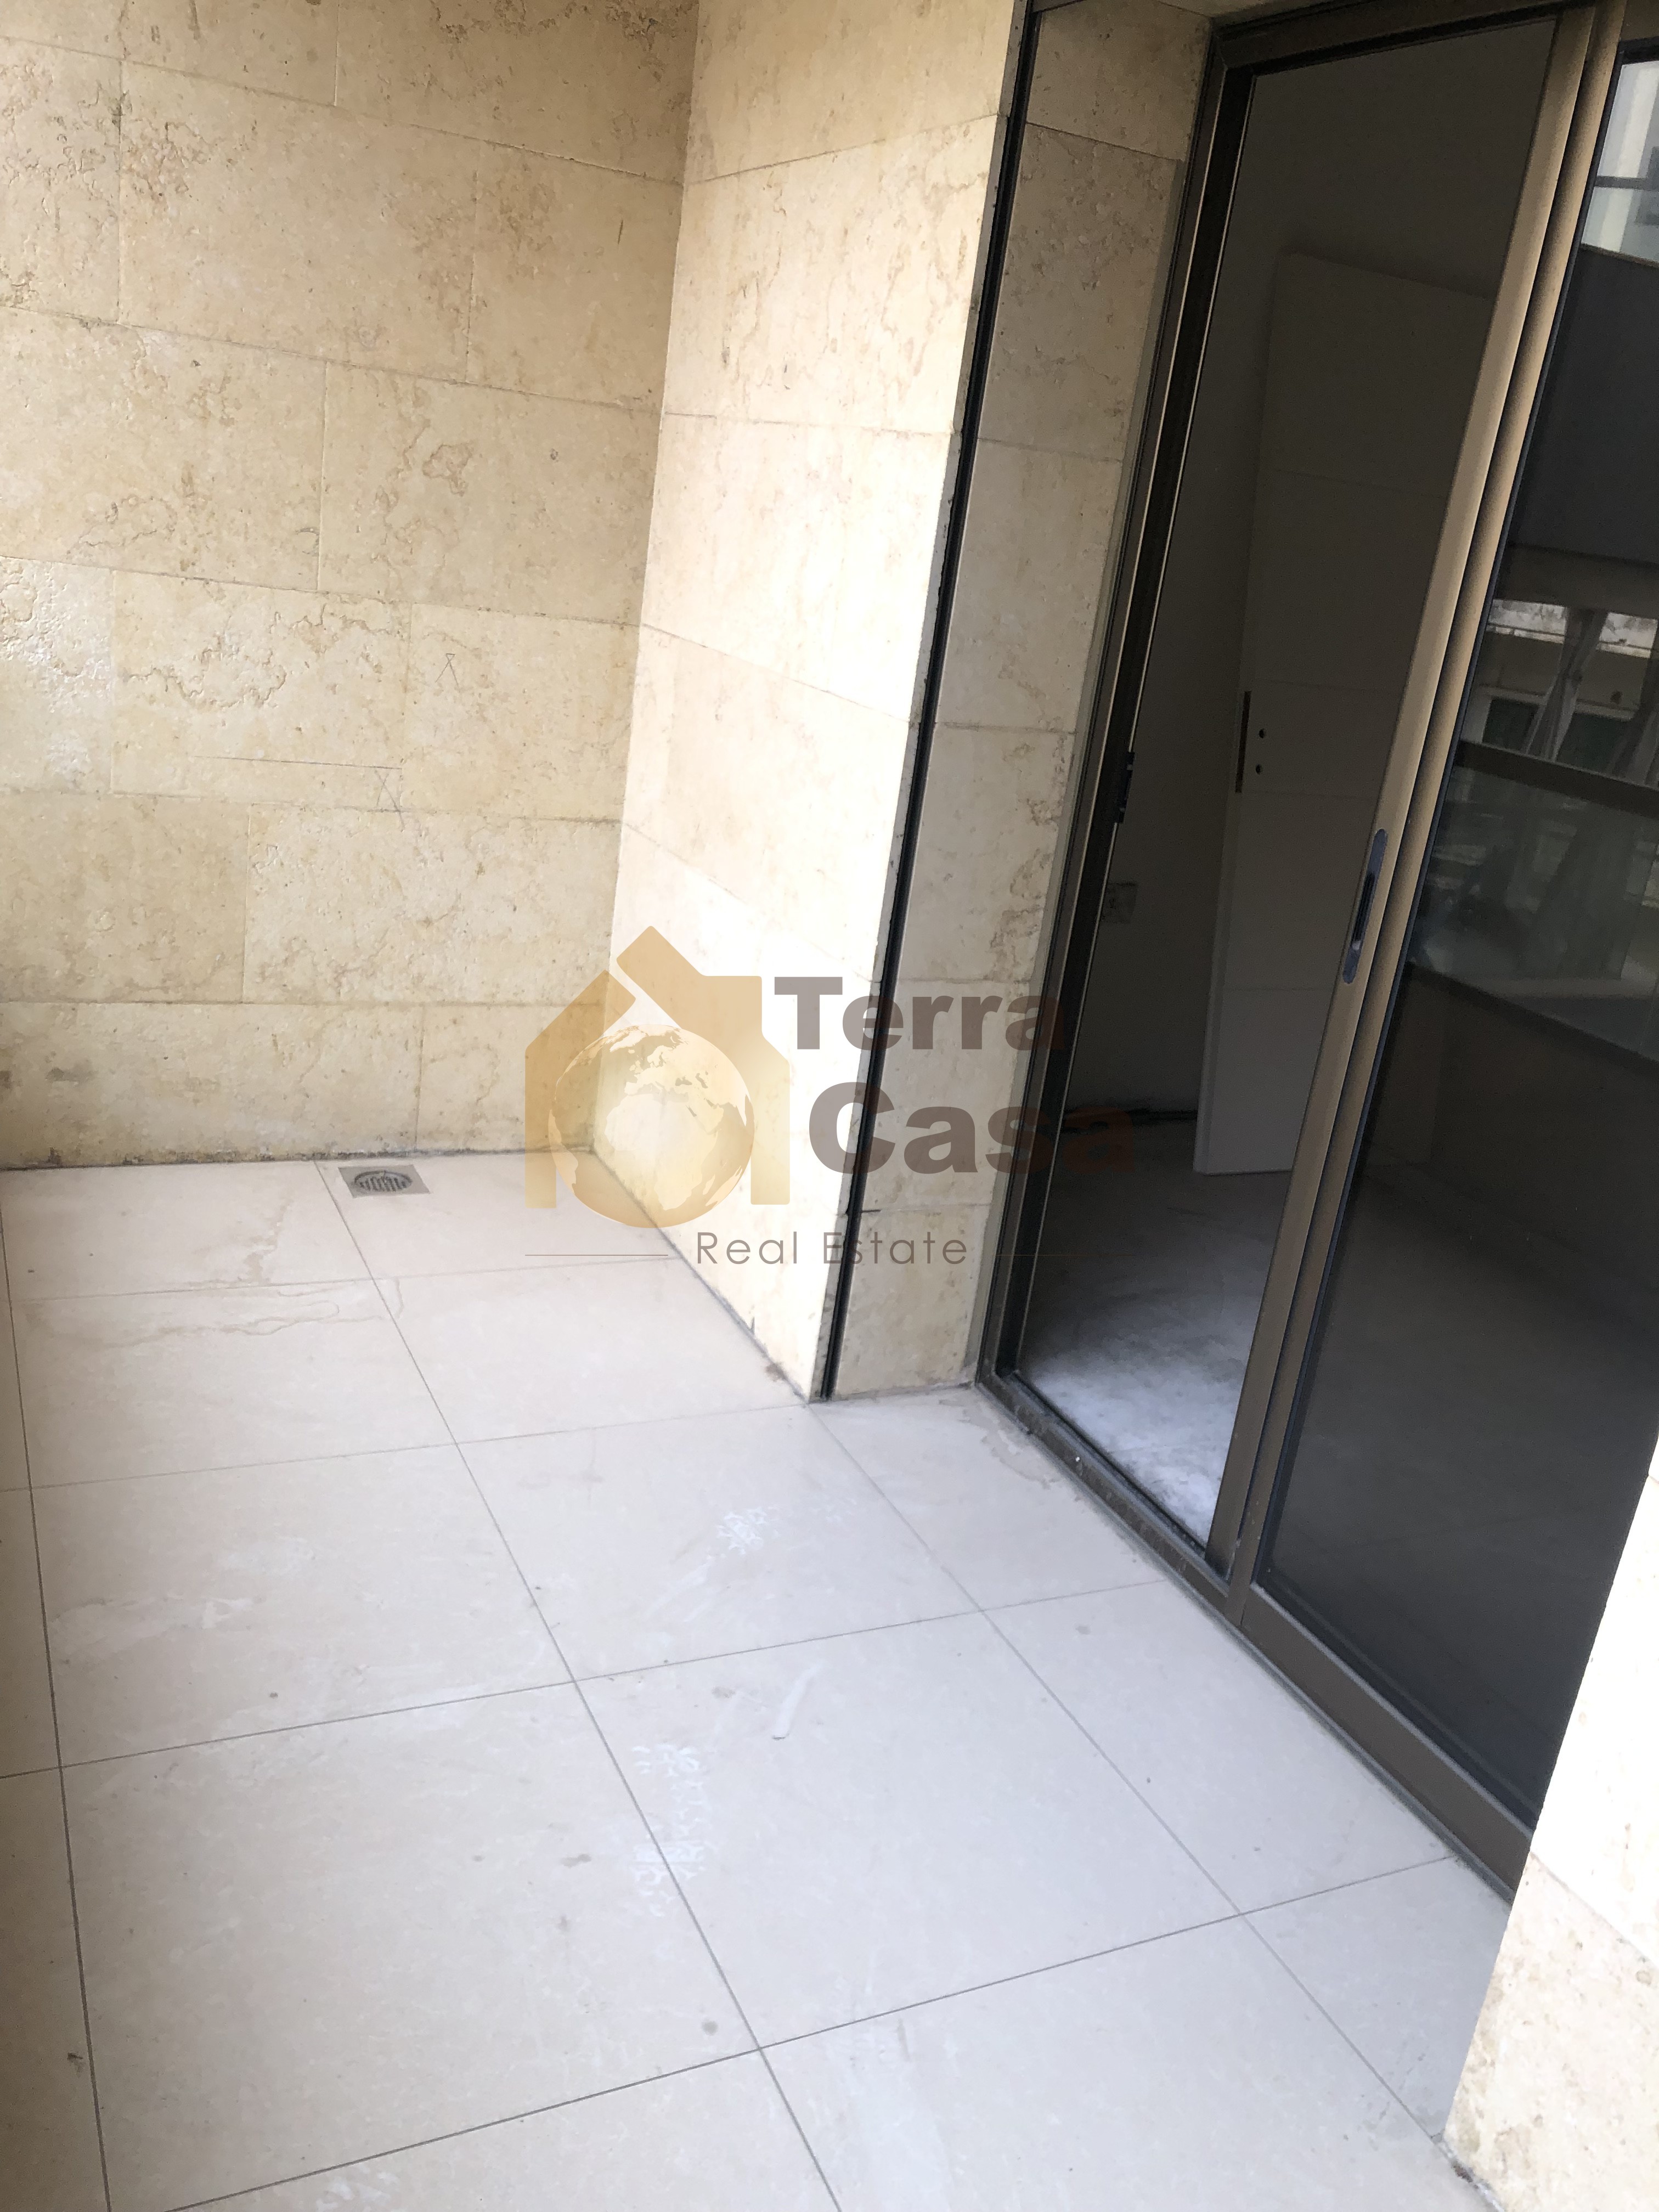 Brand new apartment in achrafieh , prime location Ref# 4165